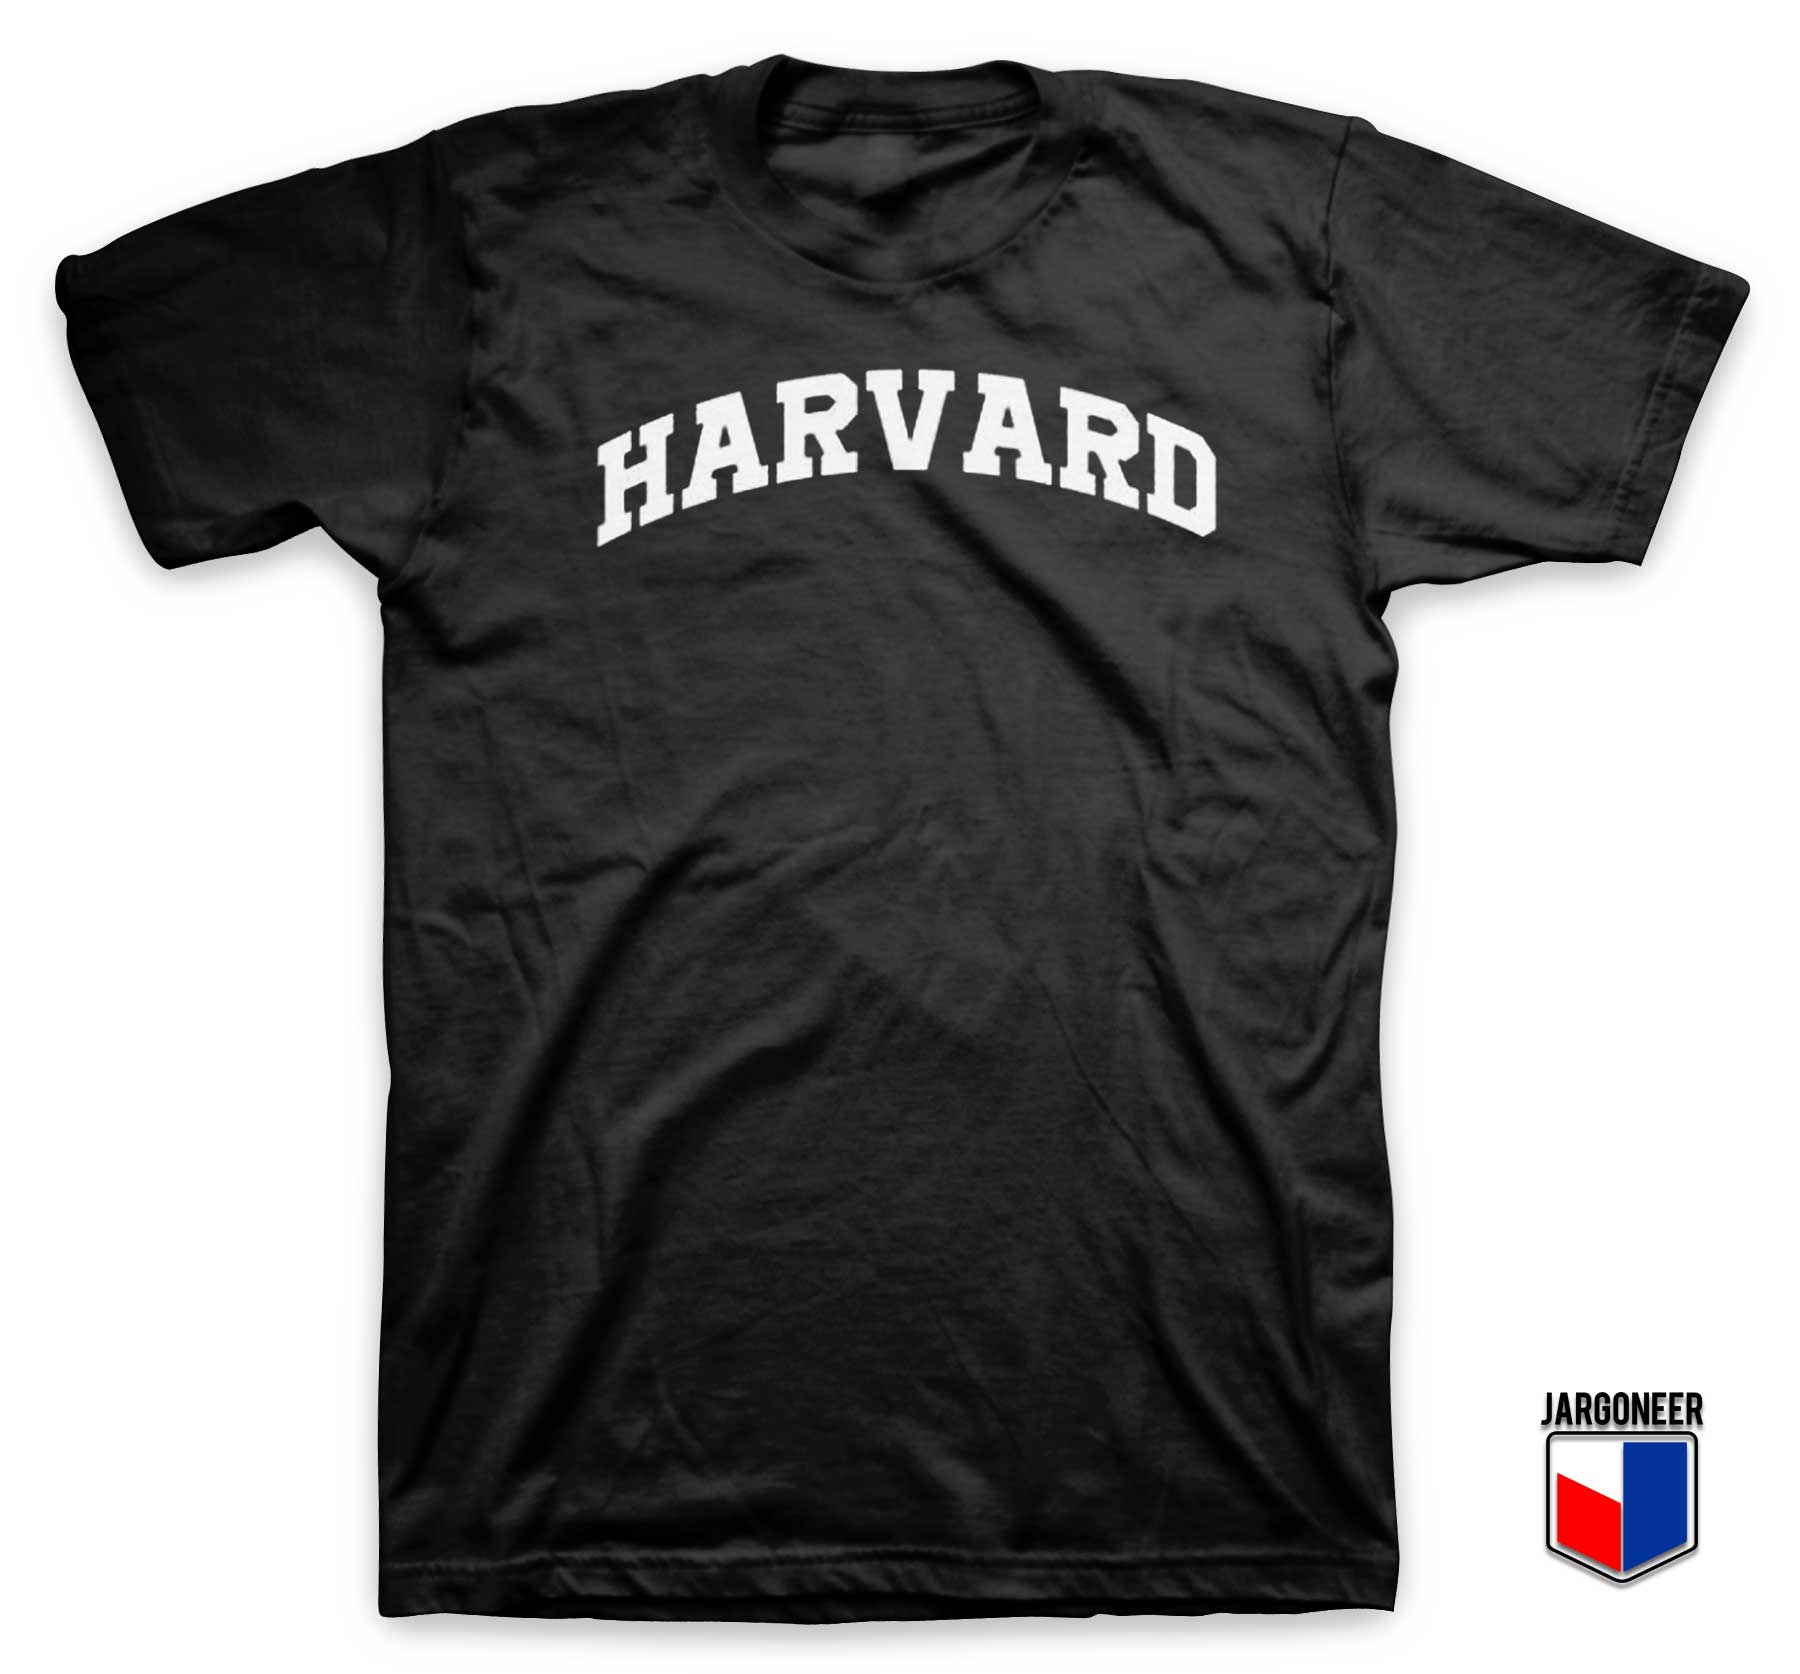 Harvard University T Shirt - Shop Unique Graphic Cool Shirt Designs